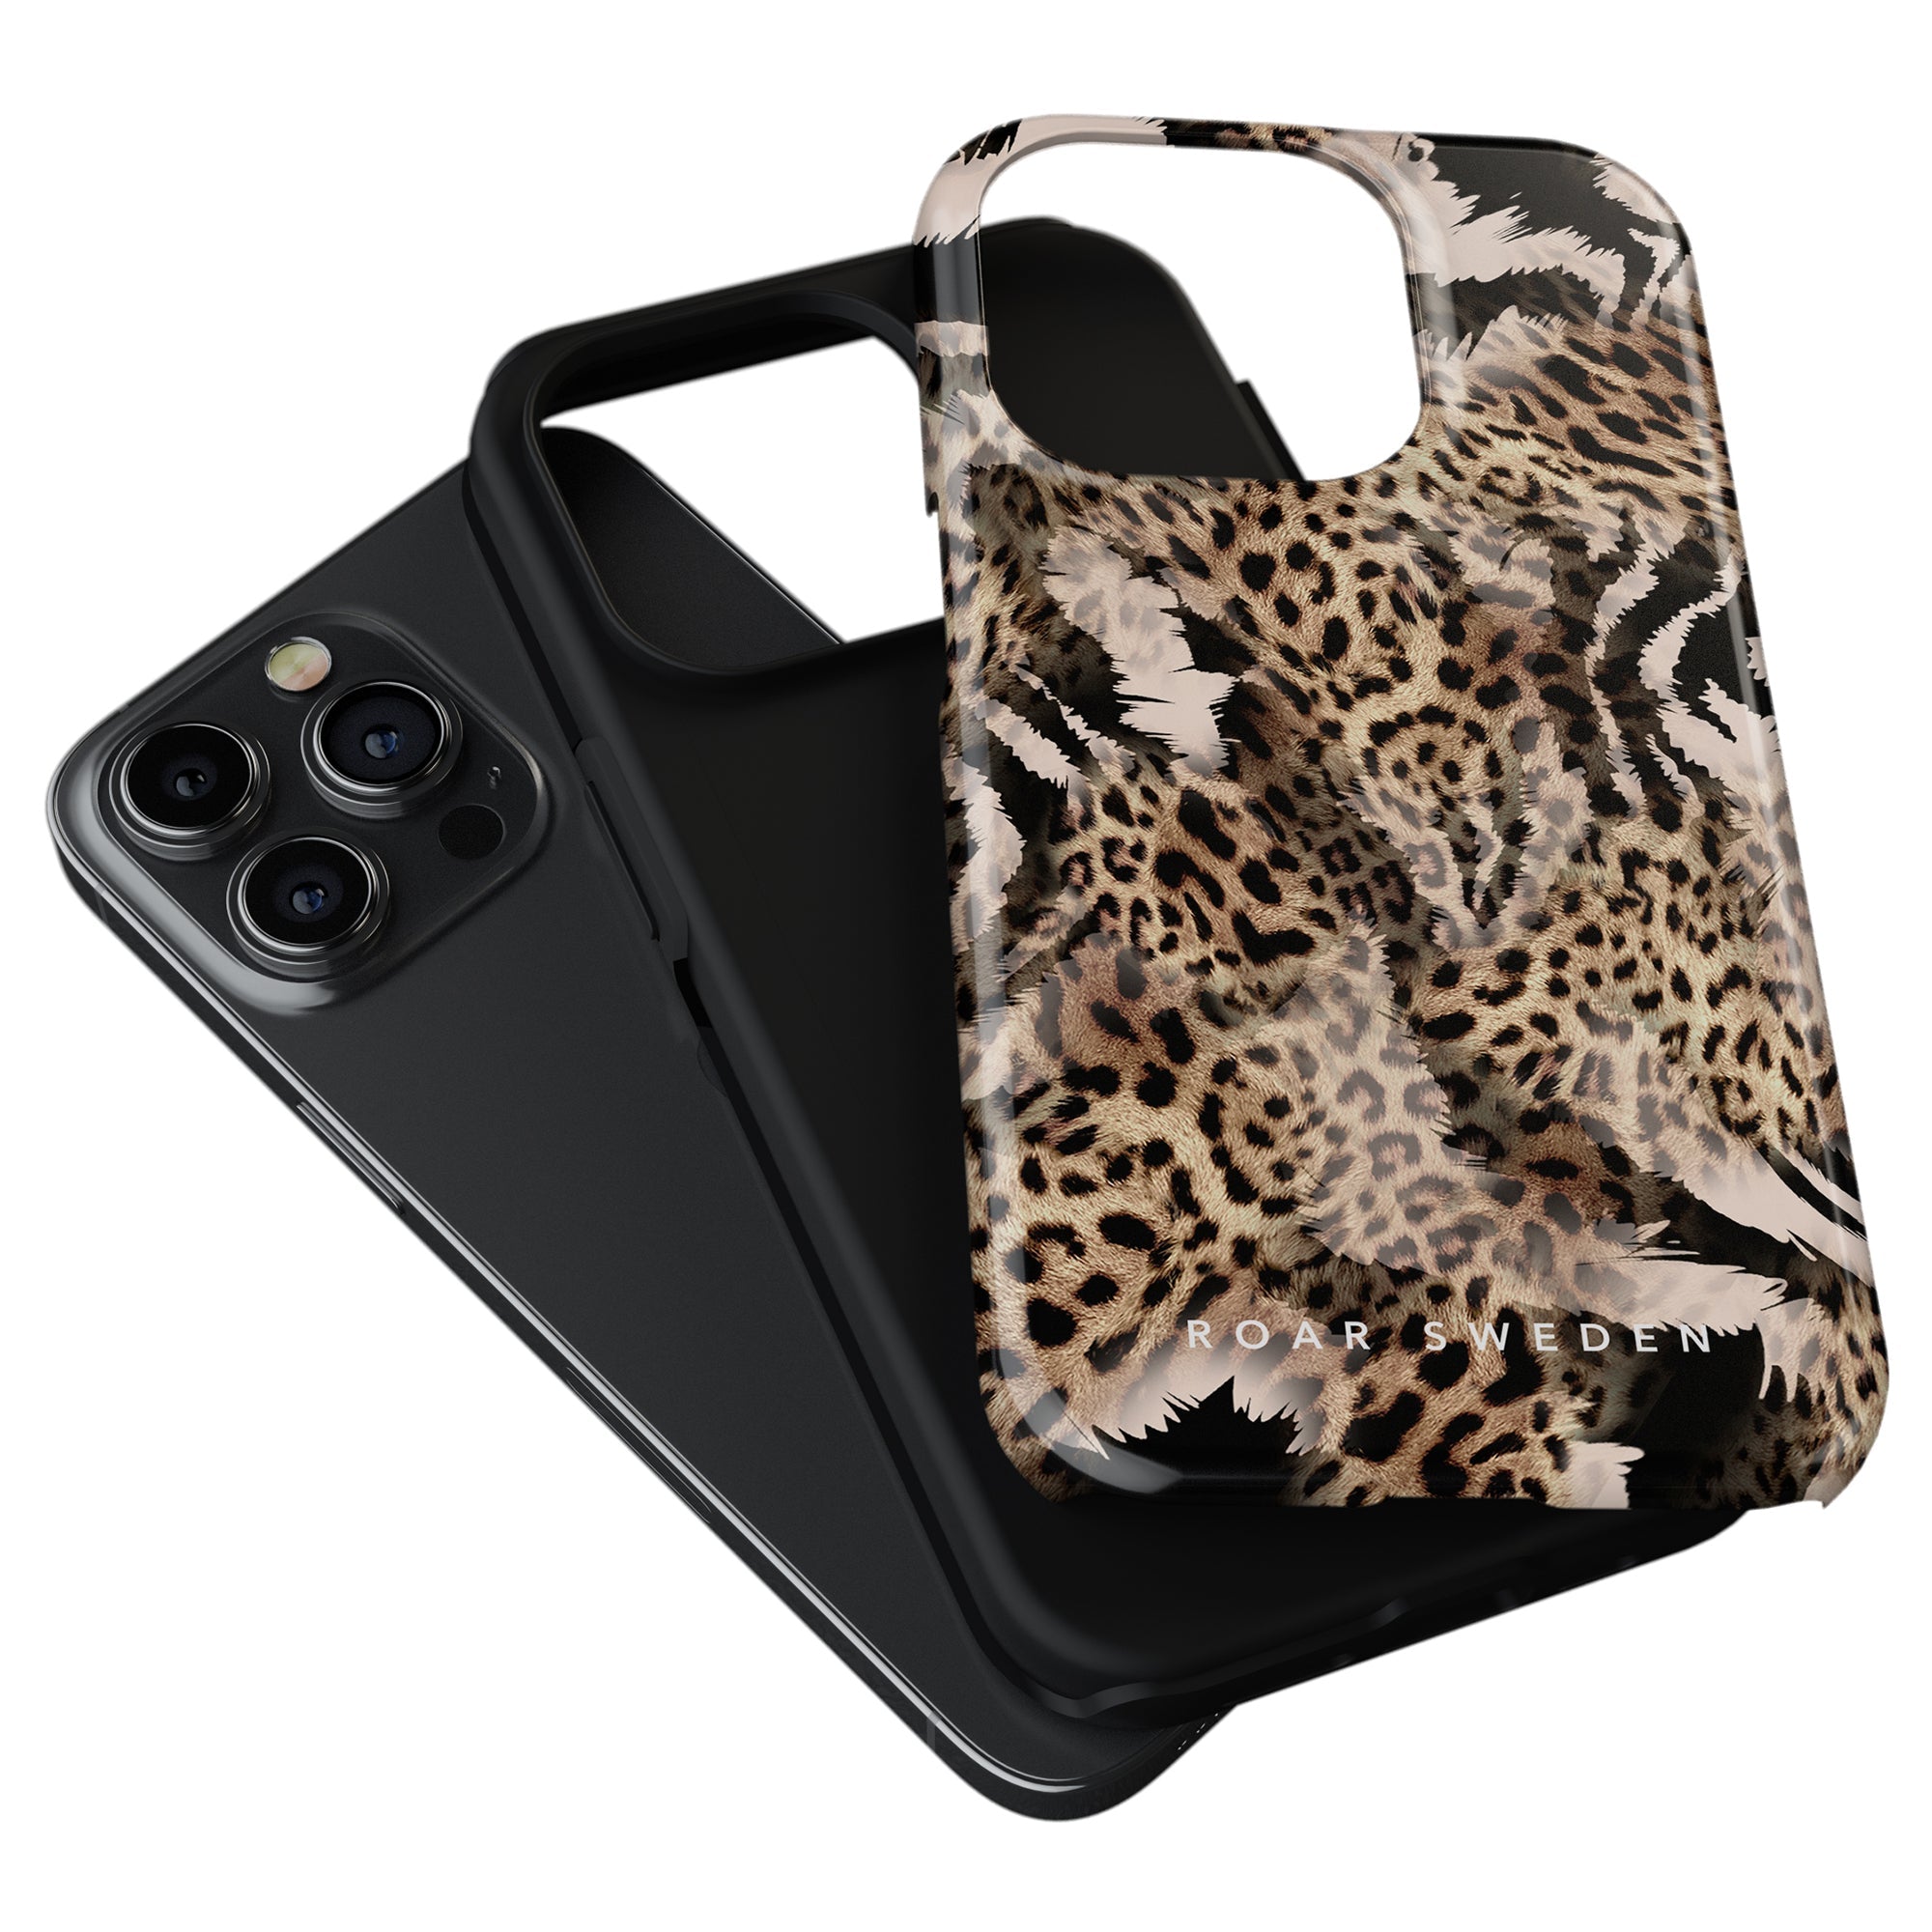 Ett Kenya-inspirerat leopardmönstrat Tough fodral för iPhone 11 Pro.